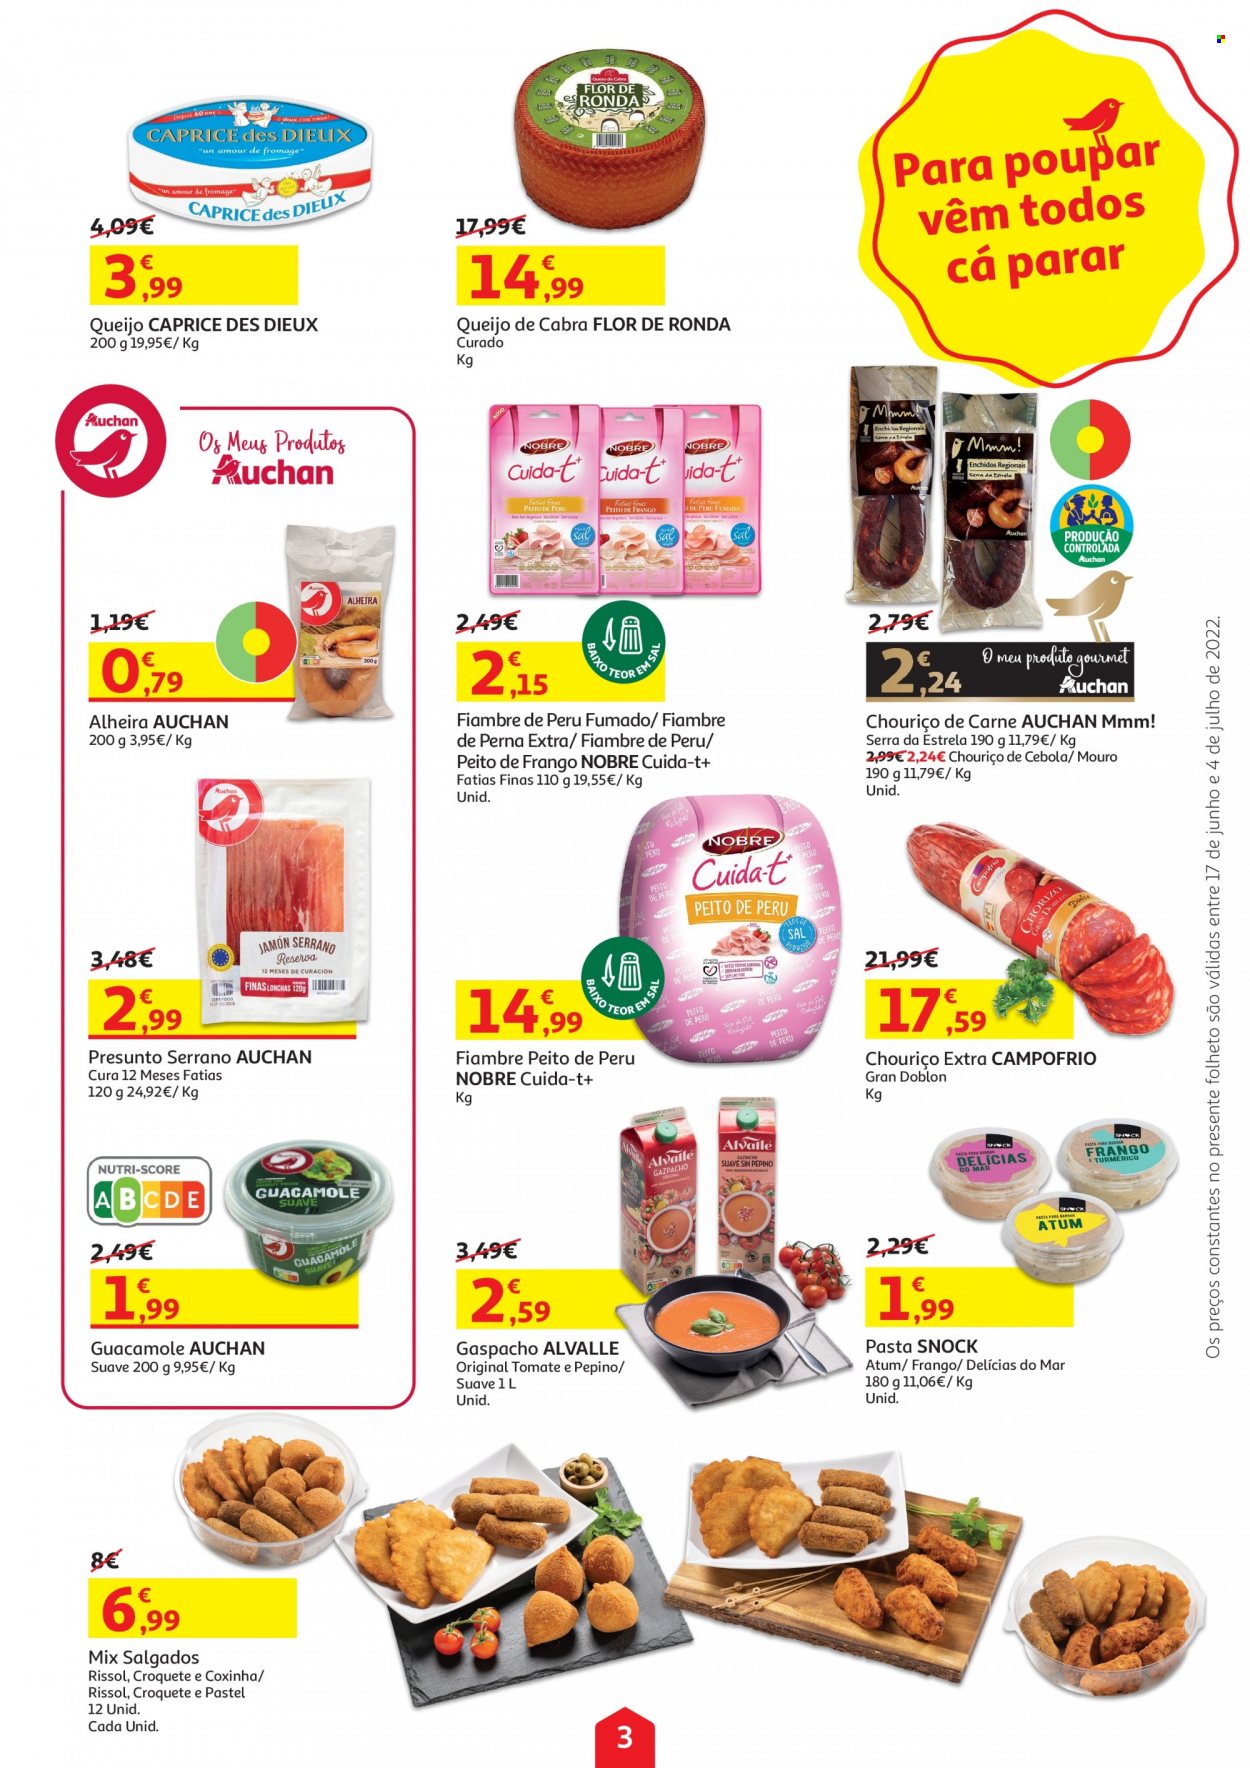 Folheto Auchan - 17.6.2022 - 4.7.2022 - Produtos em promoção - peito de frango, peito de peru, perú, gaspacho, rissois, fiambre, chouriço, fiambre de peru, alheira, queijo, queijo de cabra. Página 3.